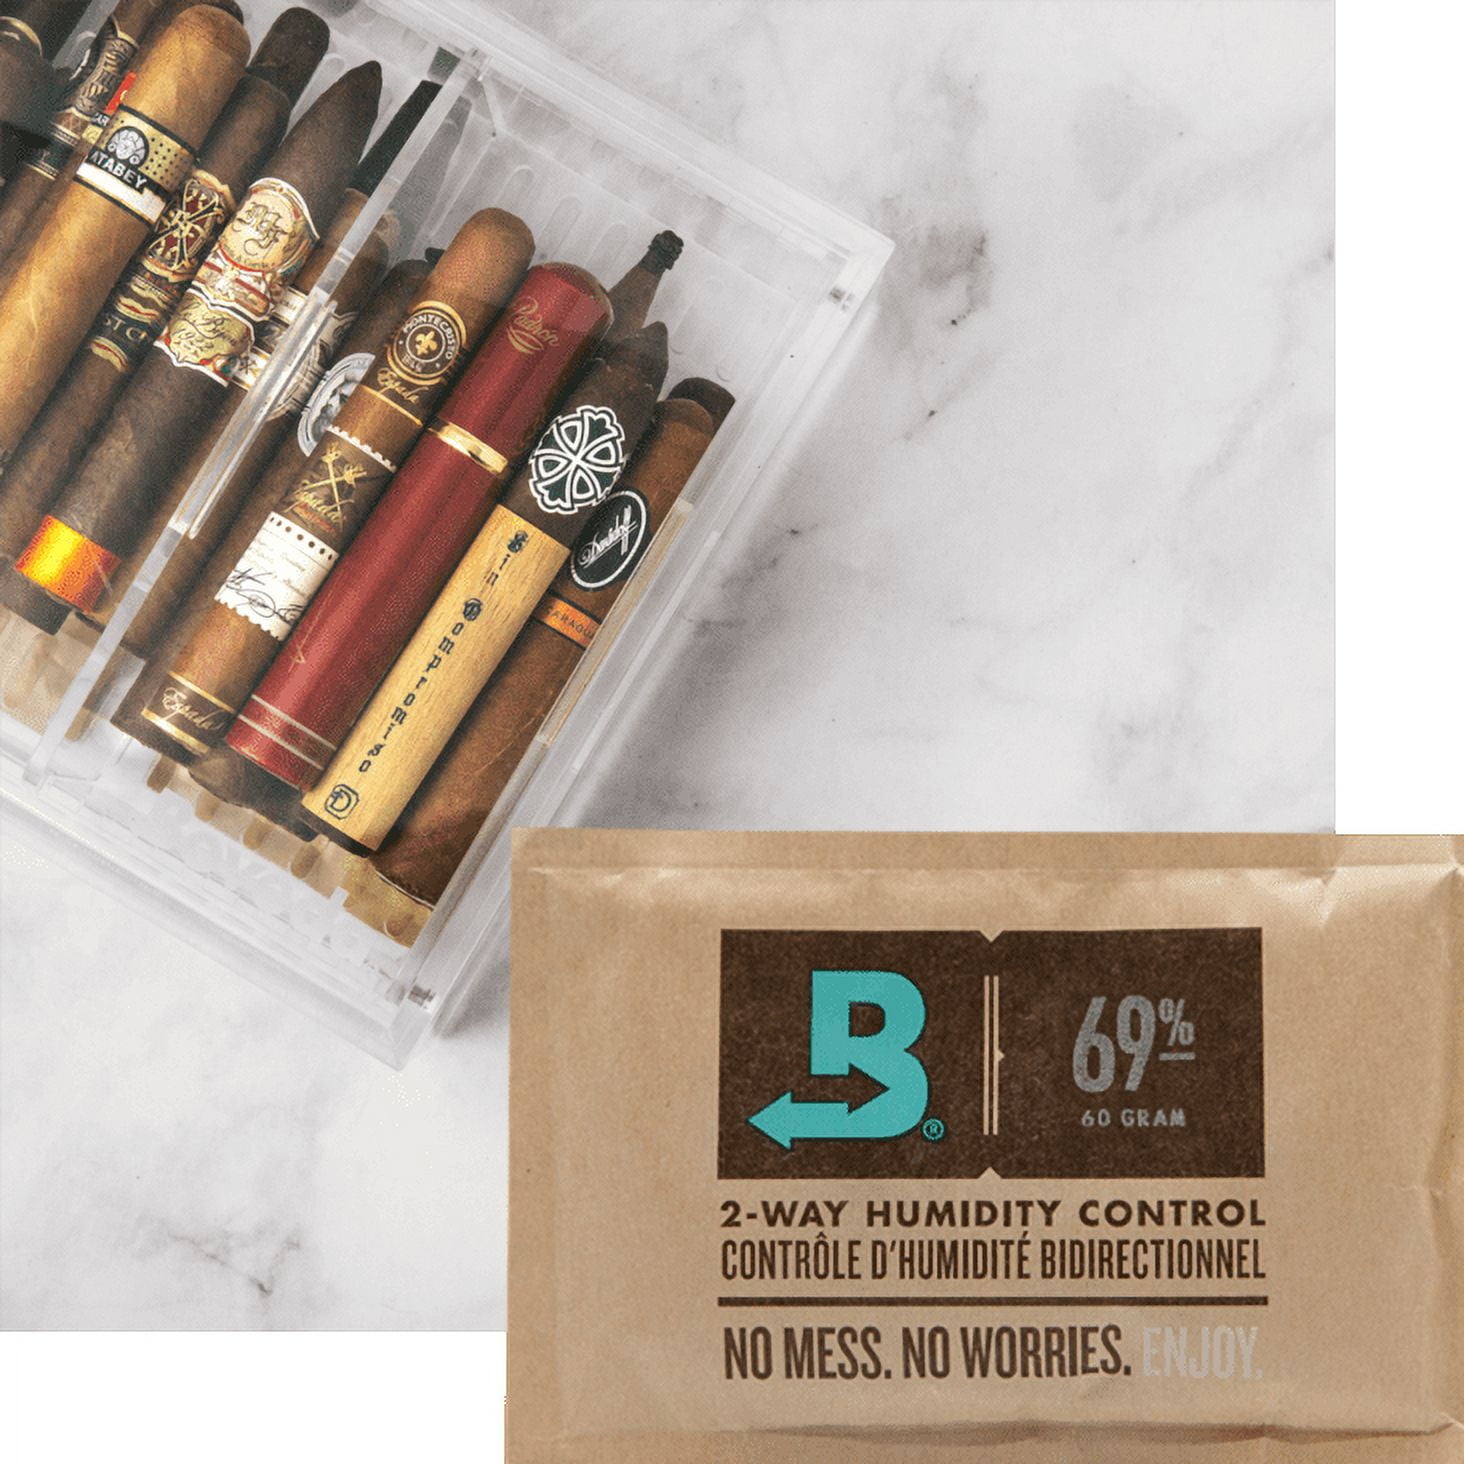 Boveda Cigar Humification 69% Humidity by Xikar